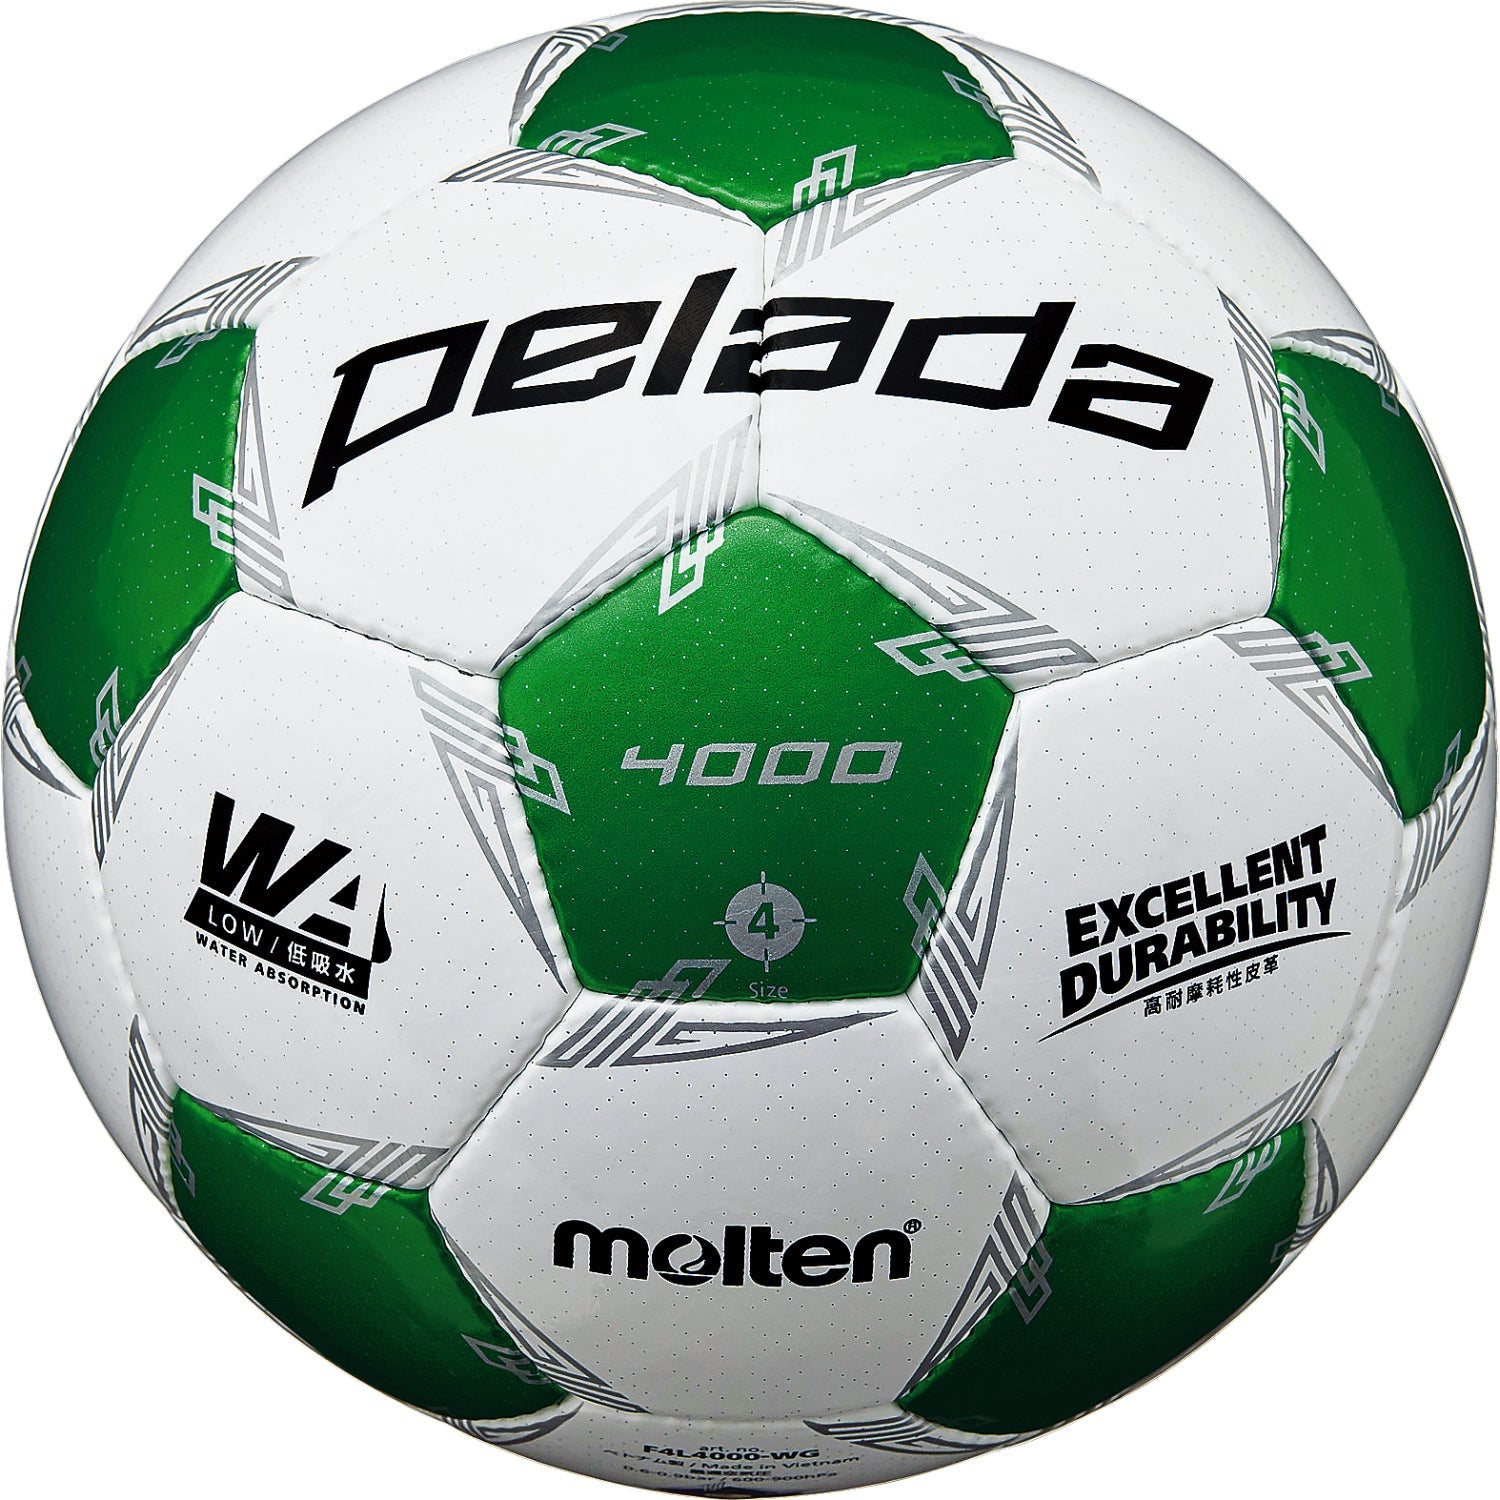 ペレーダ4000（4号球） | モルテン公式オンラインショップ